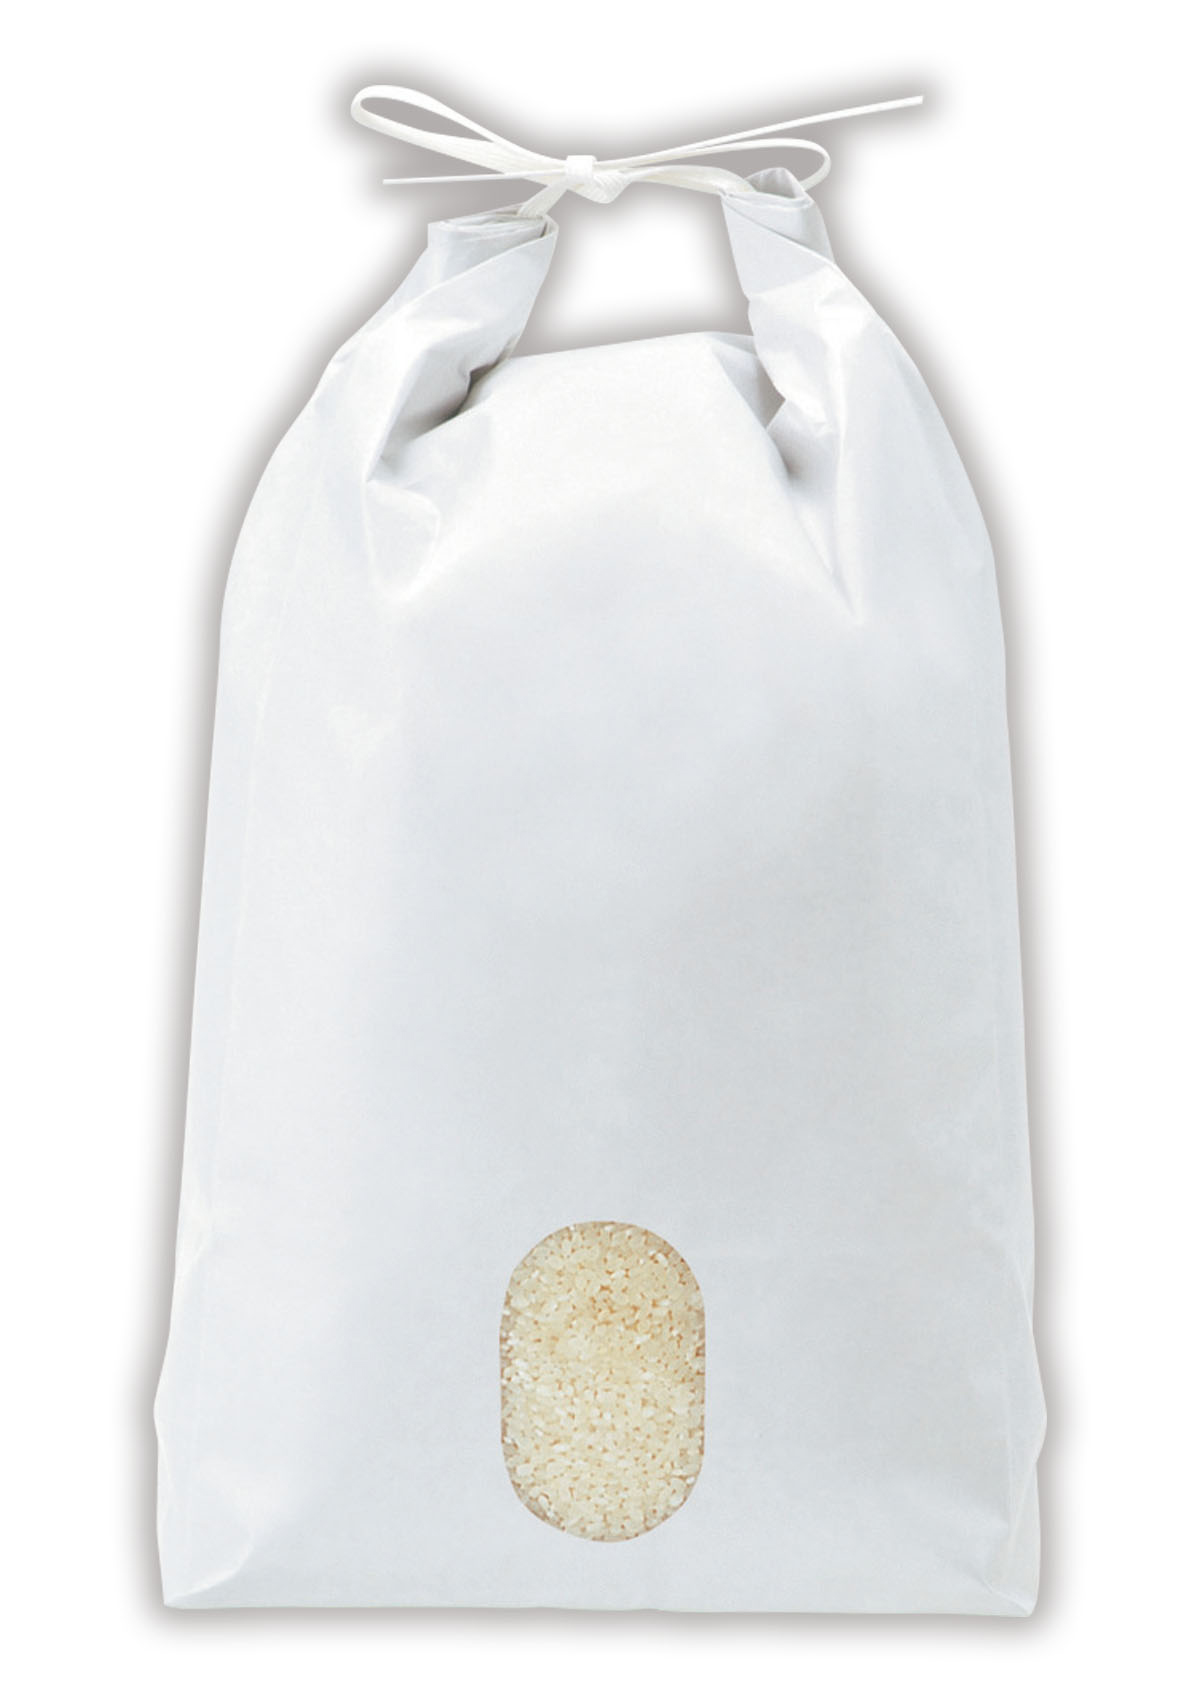 当店限定販売】 米袋 2kg用 ミルキークイーン 100枚セット KHP-501 白保湿タイプ フラワー